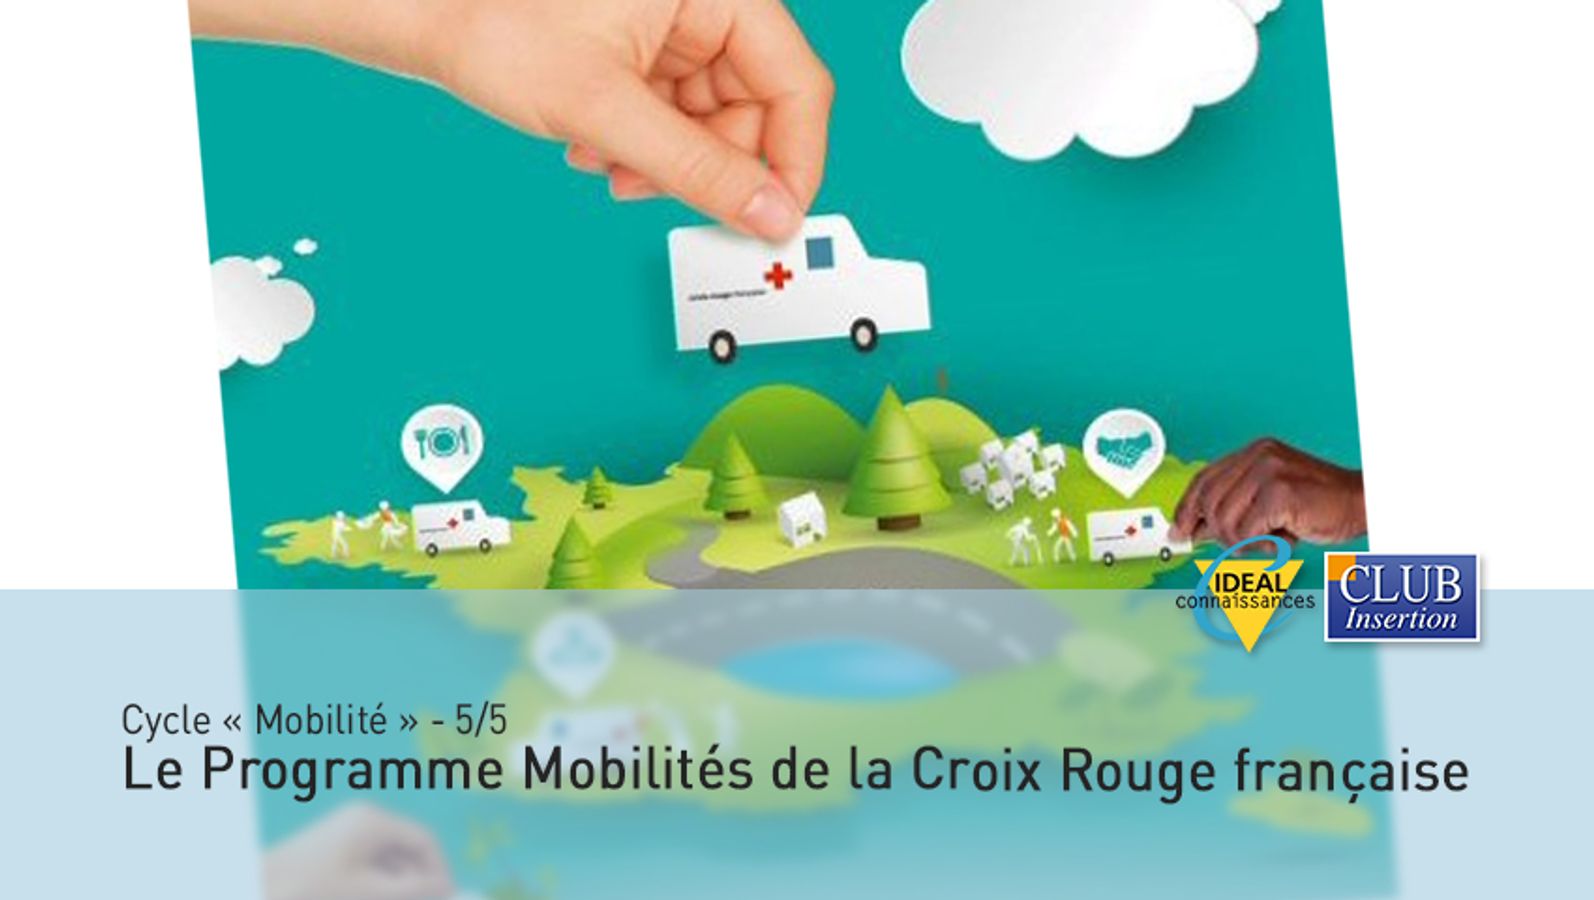 Cycle "Mobilité" - 5/5 - Le Programme Mobilités de la Croix-Rouge française